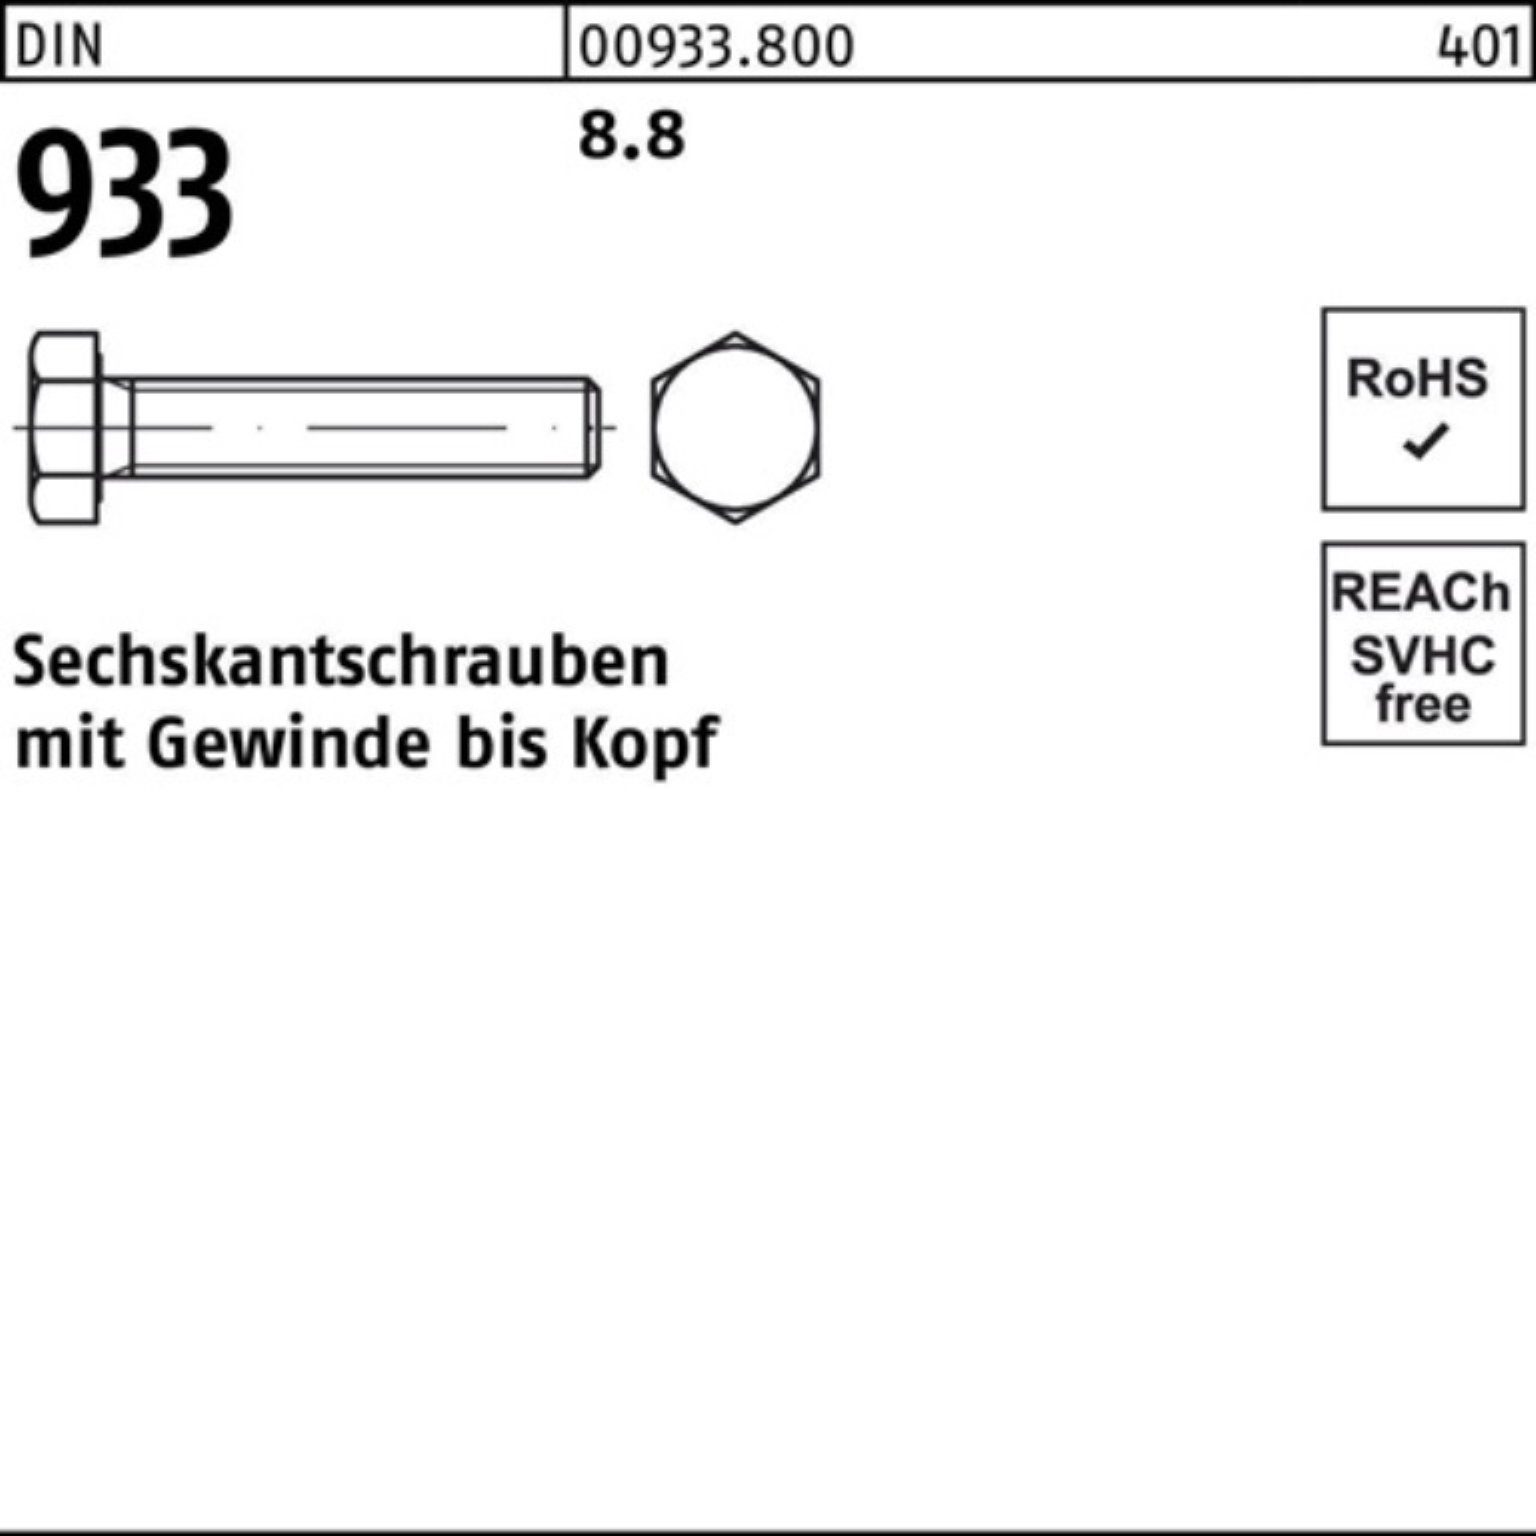 Reyher Sechskantschraube 200er Pack Sechskantschraube 200 45 VG 933 933 DIN DIN Stück 8.8 M7x